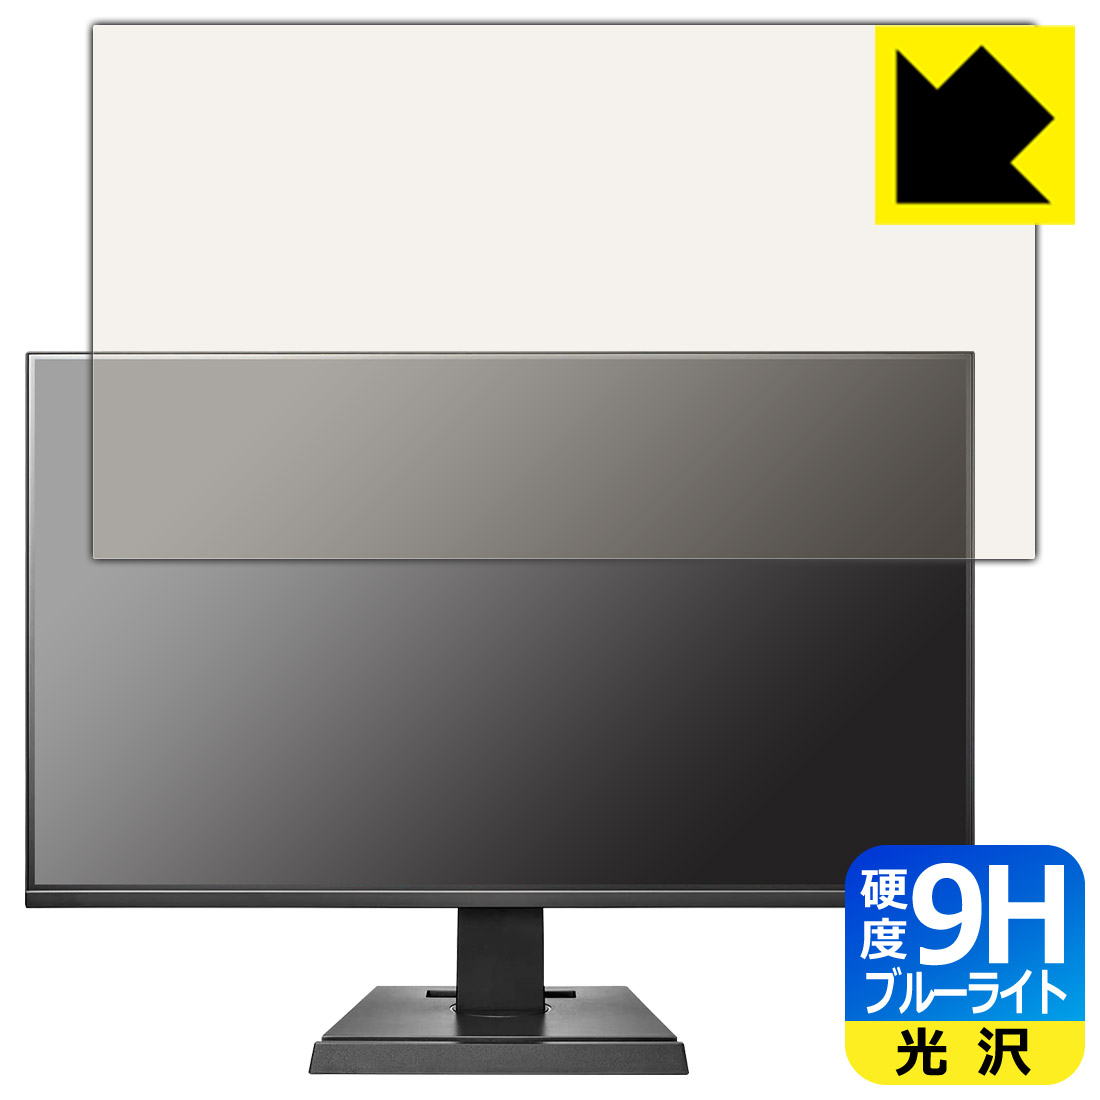 9H高硬度【ブルーライトカット】保護フィルム I-O DATA LCD-DF241SXVB / EX-LDF241SVB 日本製 自社製造直販